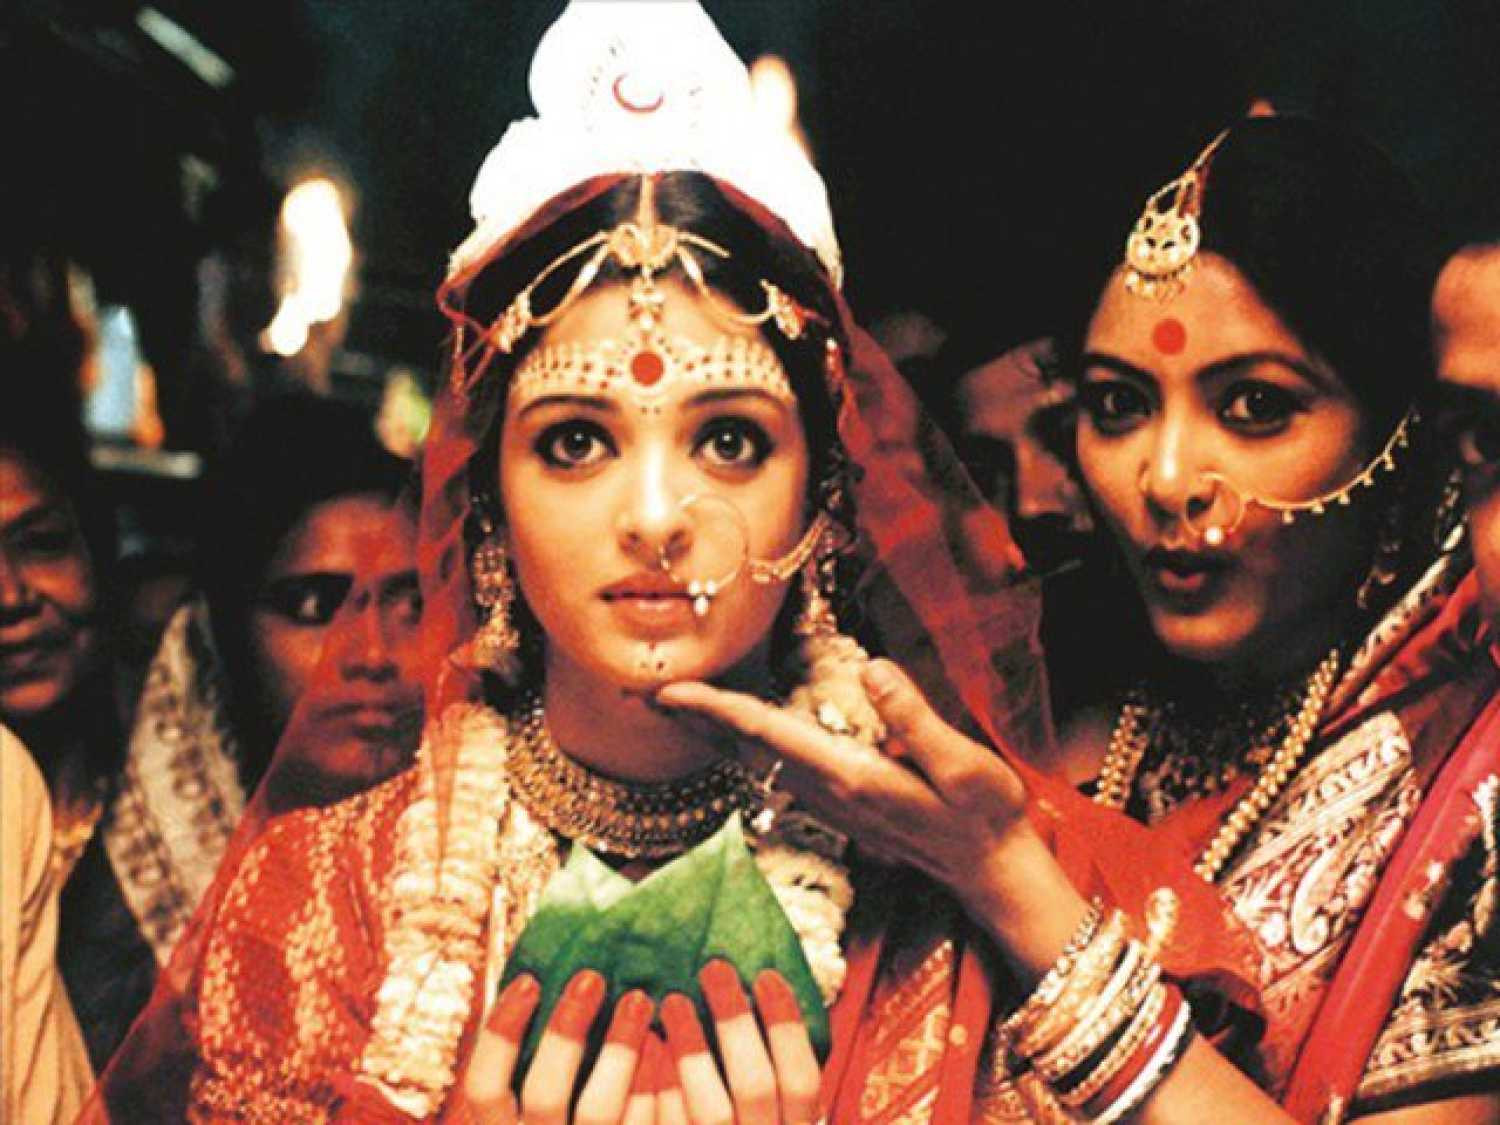 बंगाली निर्देशक रितुपर्णो घोषले सिने रूपान्तरण गरेको 'चोखेर बाली' को एक दृश्यमा अभिनेत्री ऐश्वर्या राय। उनले यसमा विनोदिनीको भूमिका गरेकी छन्।